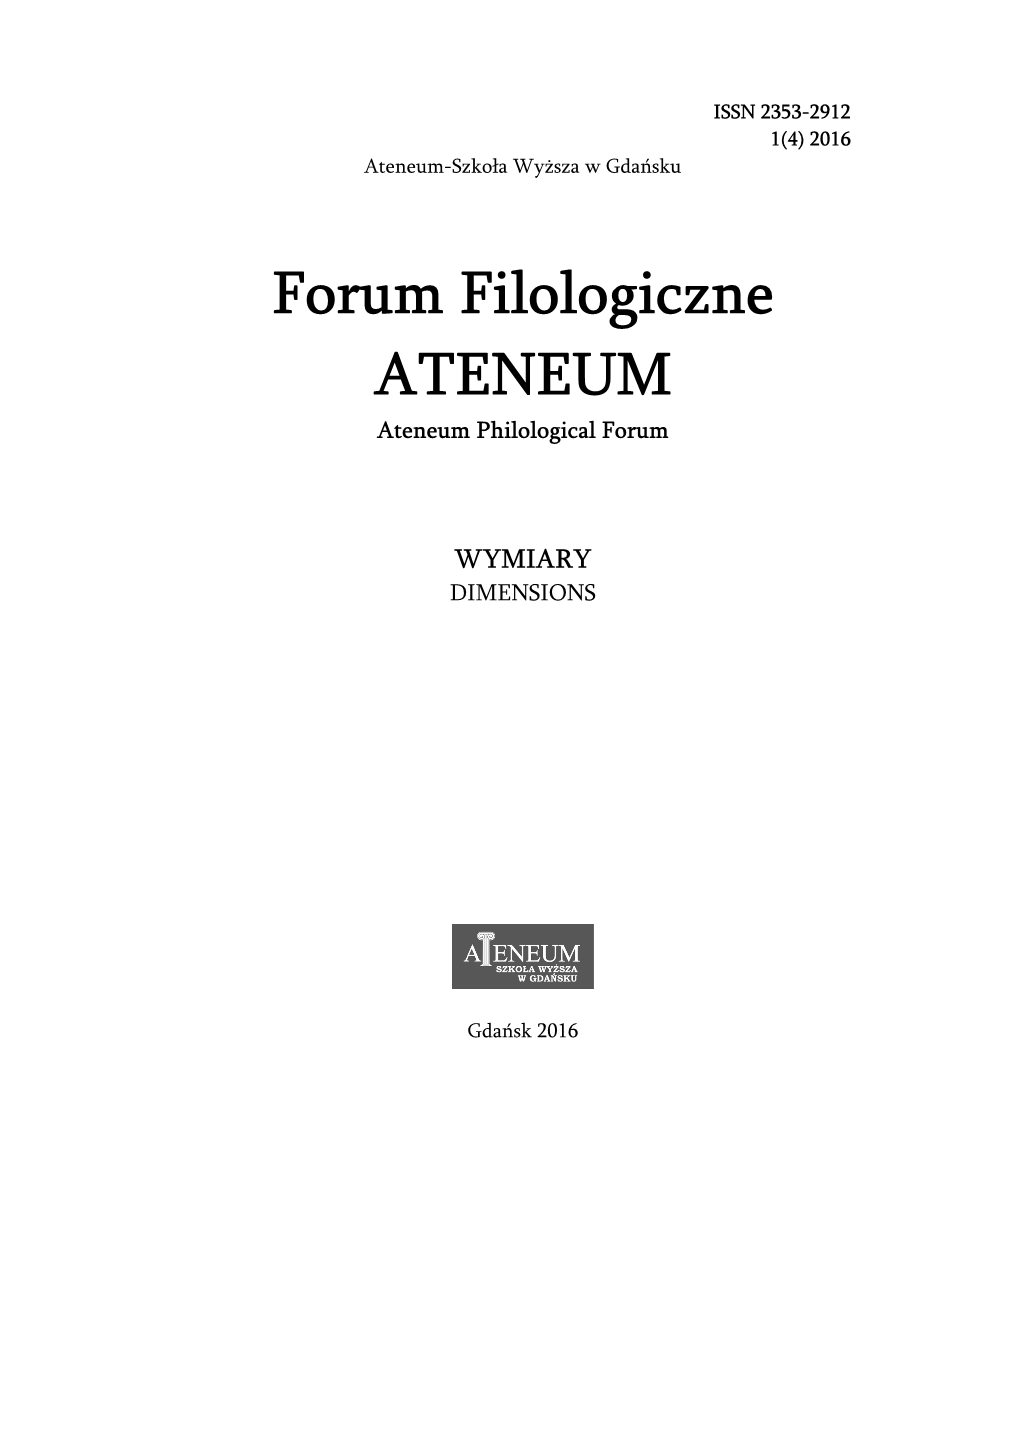 Forum Filologiczne ATENEUM Ateneum Philological Forum